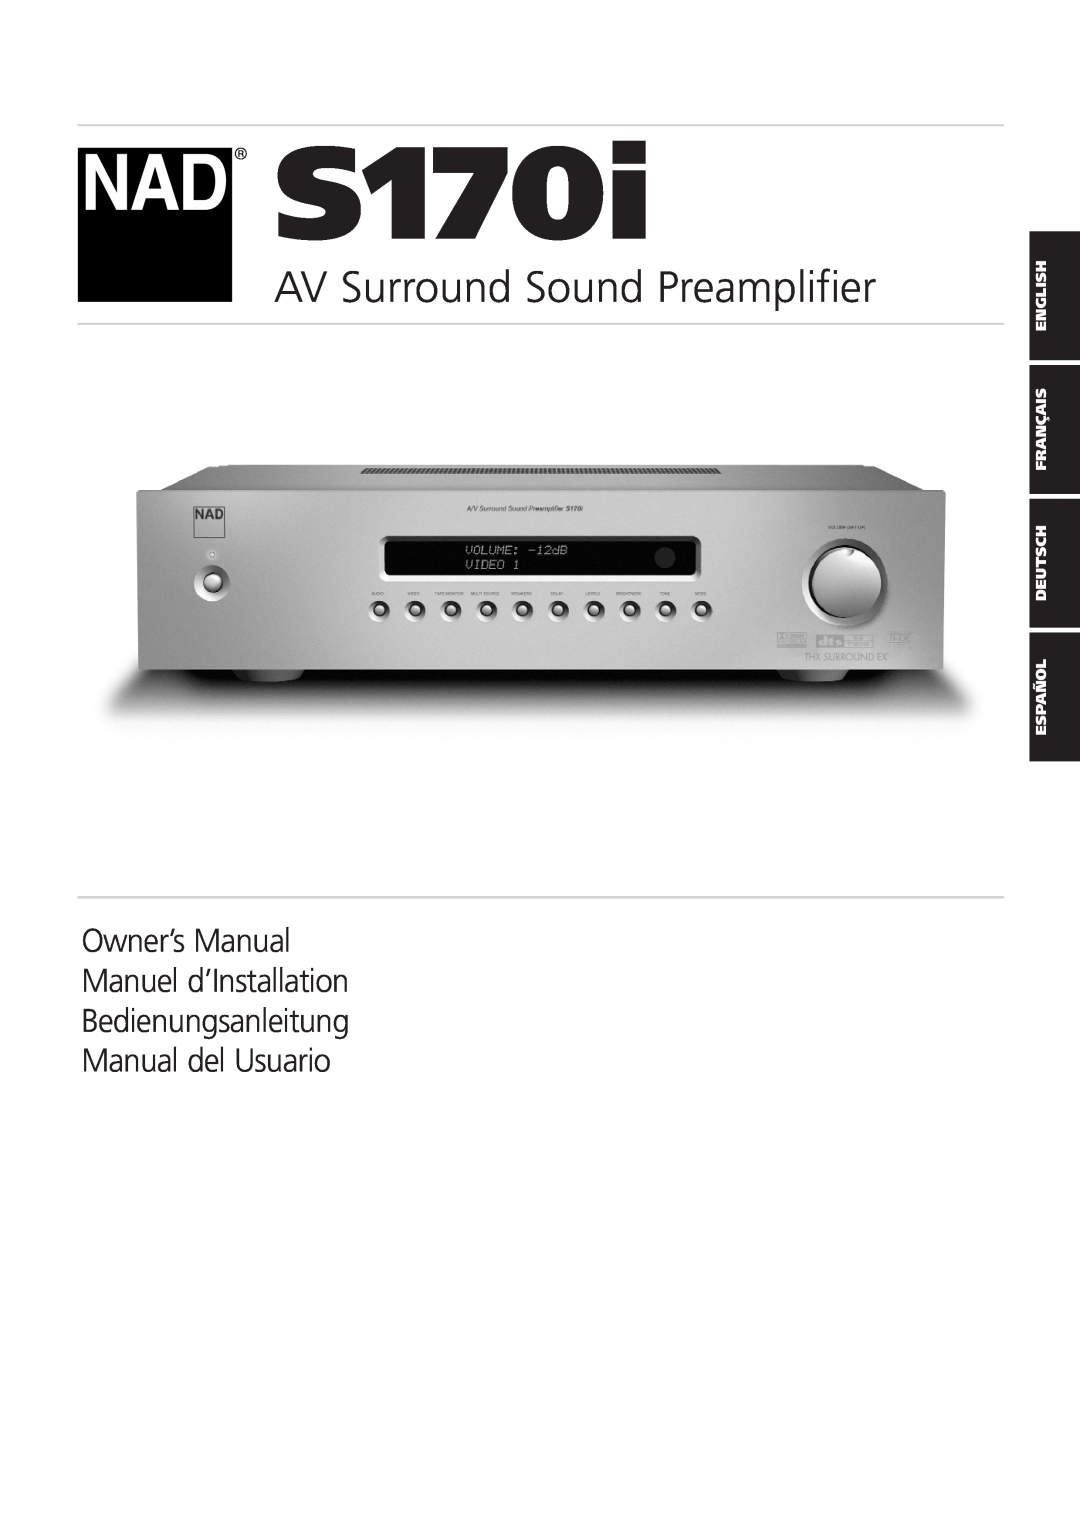 NAD S170iAV owner manual AV Surround Sound Preamplifier, Owner’s Manual Manuel d’Installation 